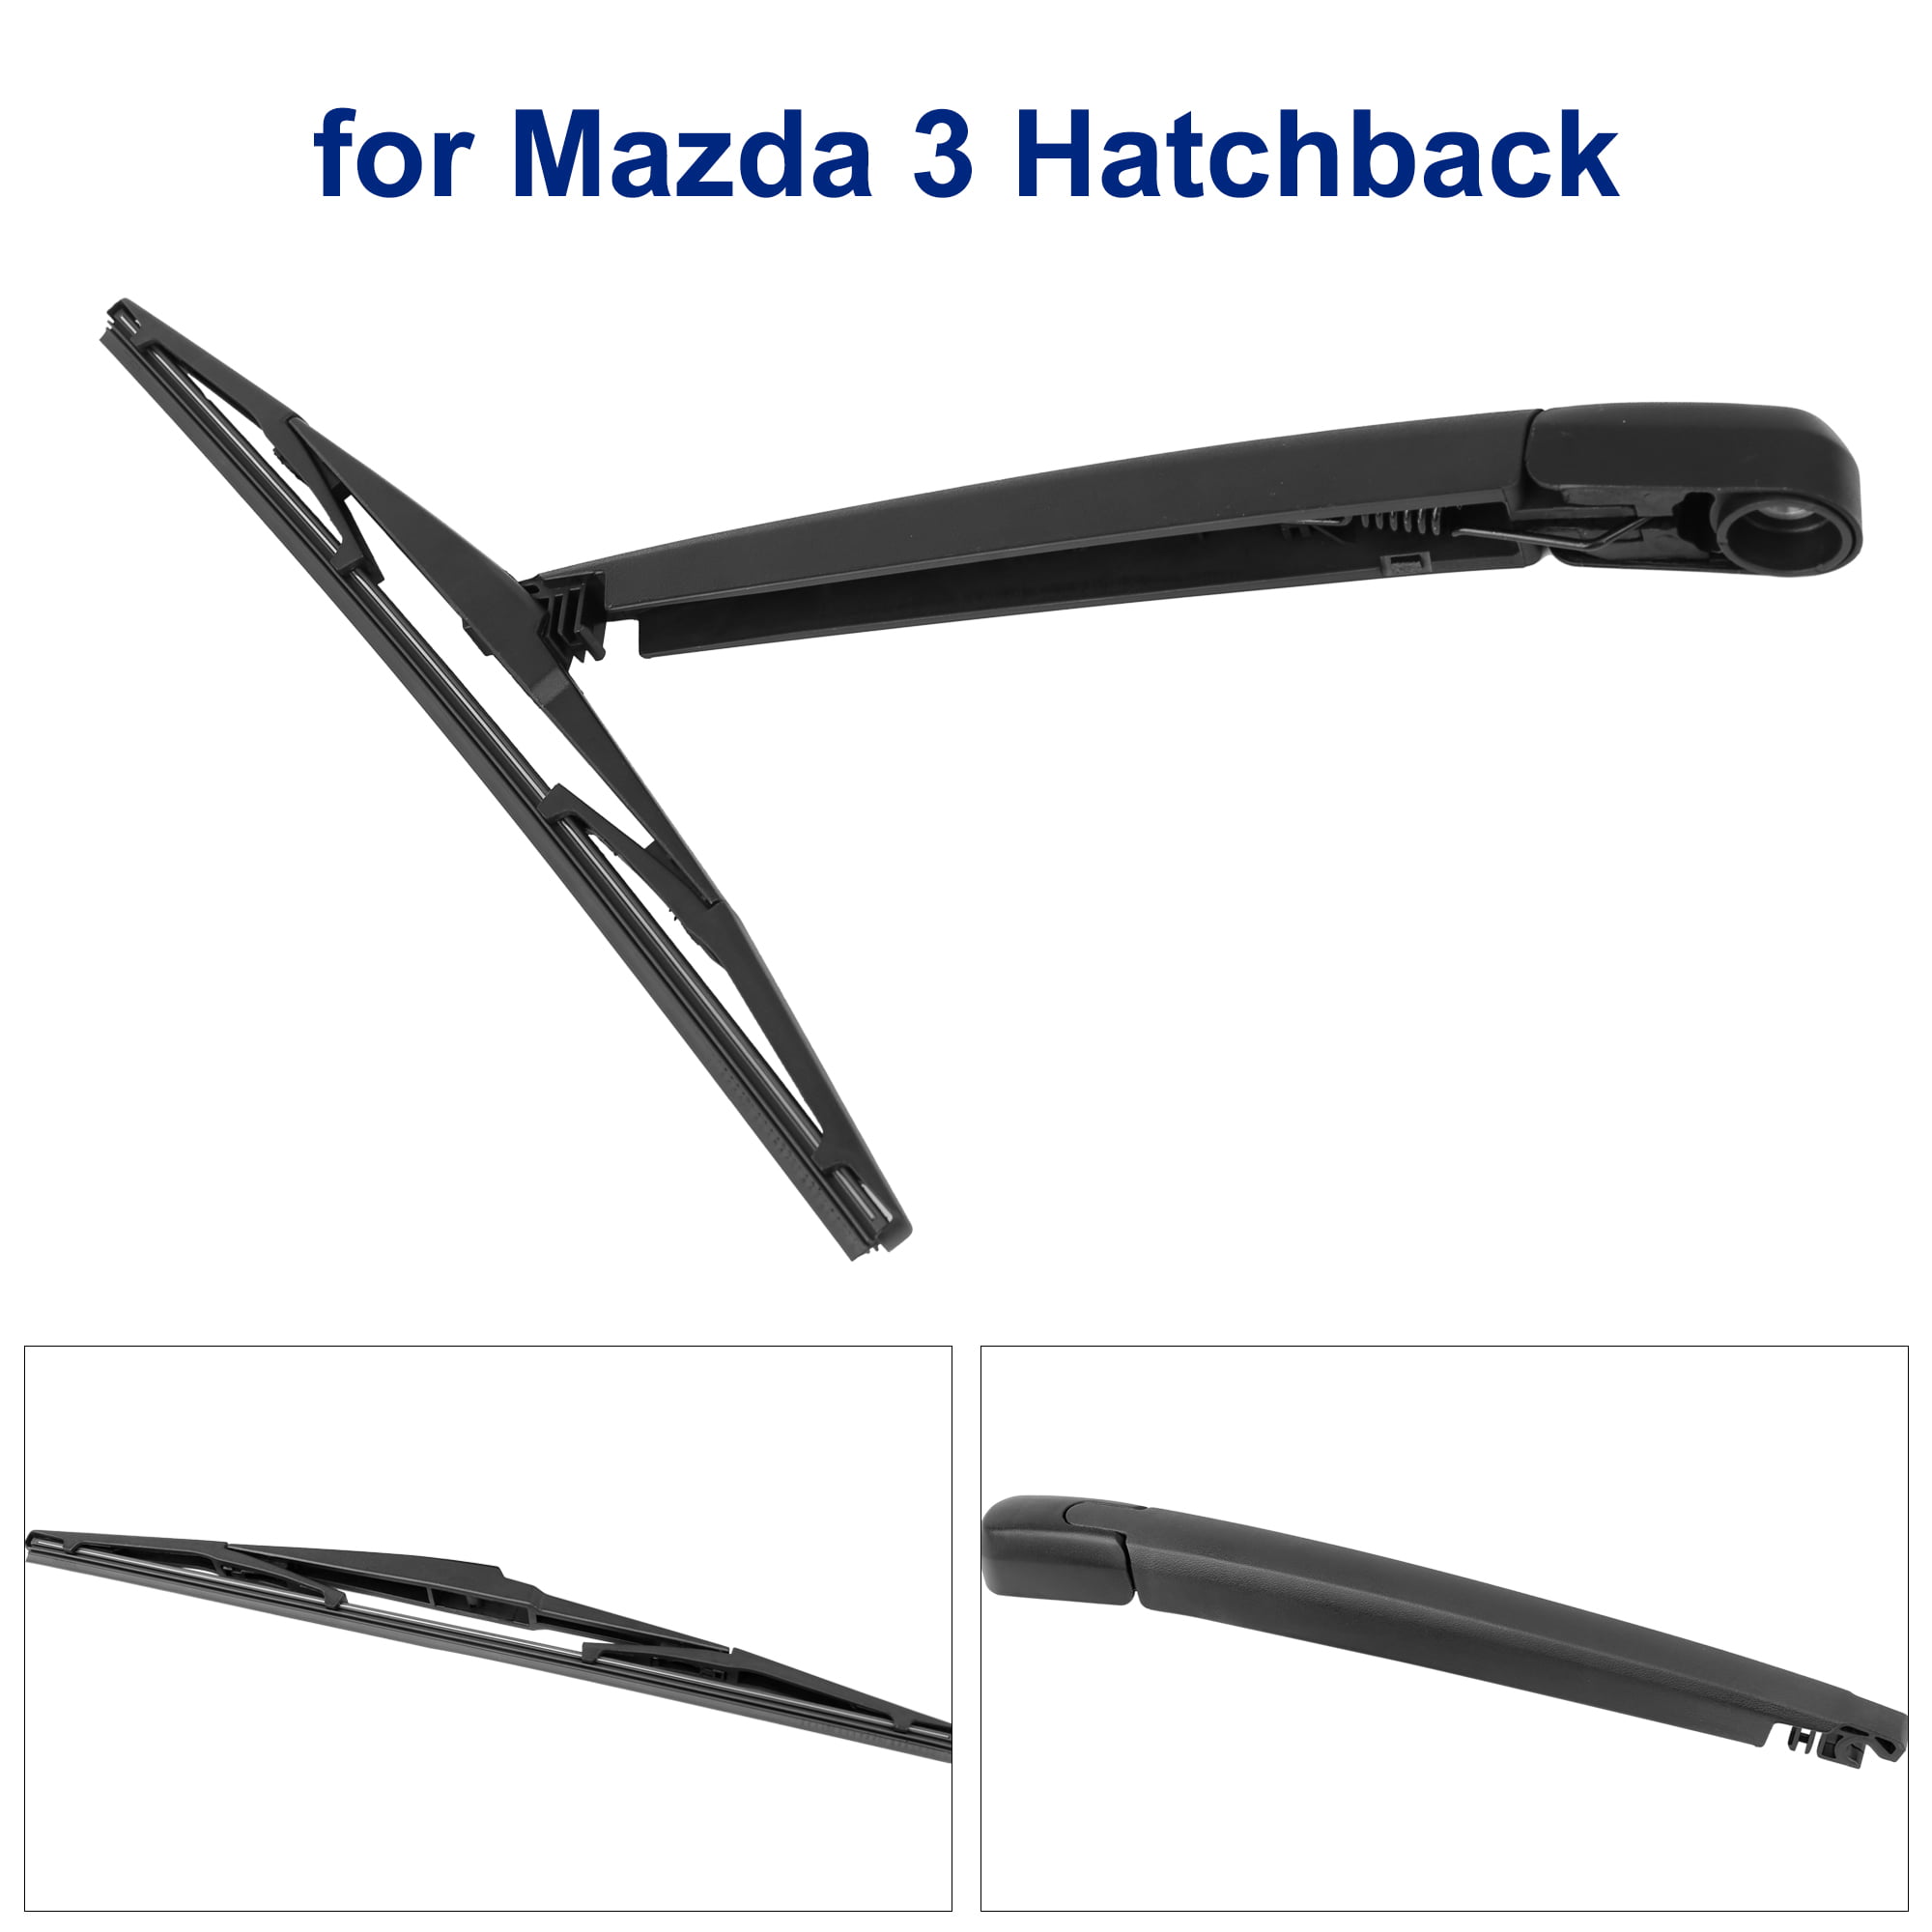 2012 Mazda 3 Hatchback Wiper Blade Size - Ultimate Mazda 2011 Mazda 3 Hatchback Windshield Wiper Size